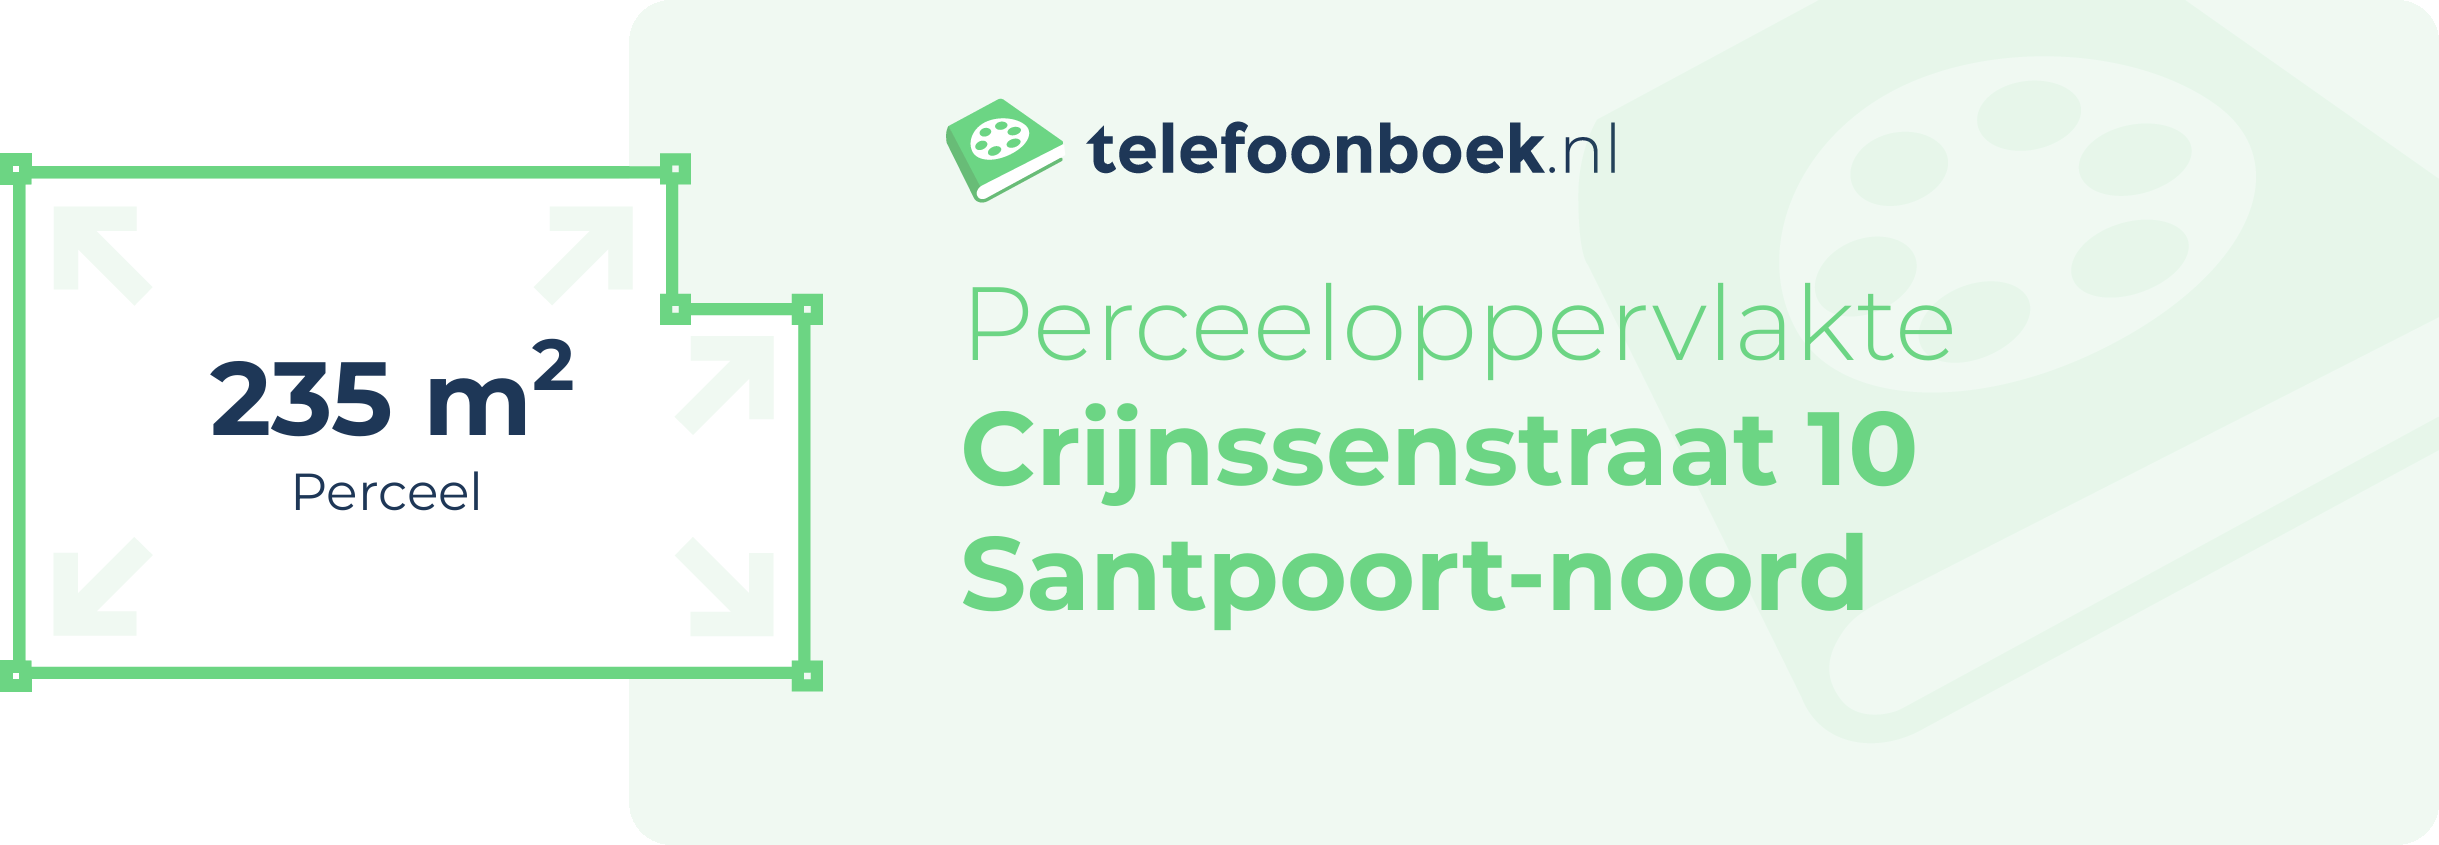 Perceeloppervlakte Crijnssenstraat 10 Santpoort-Noord